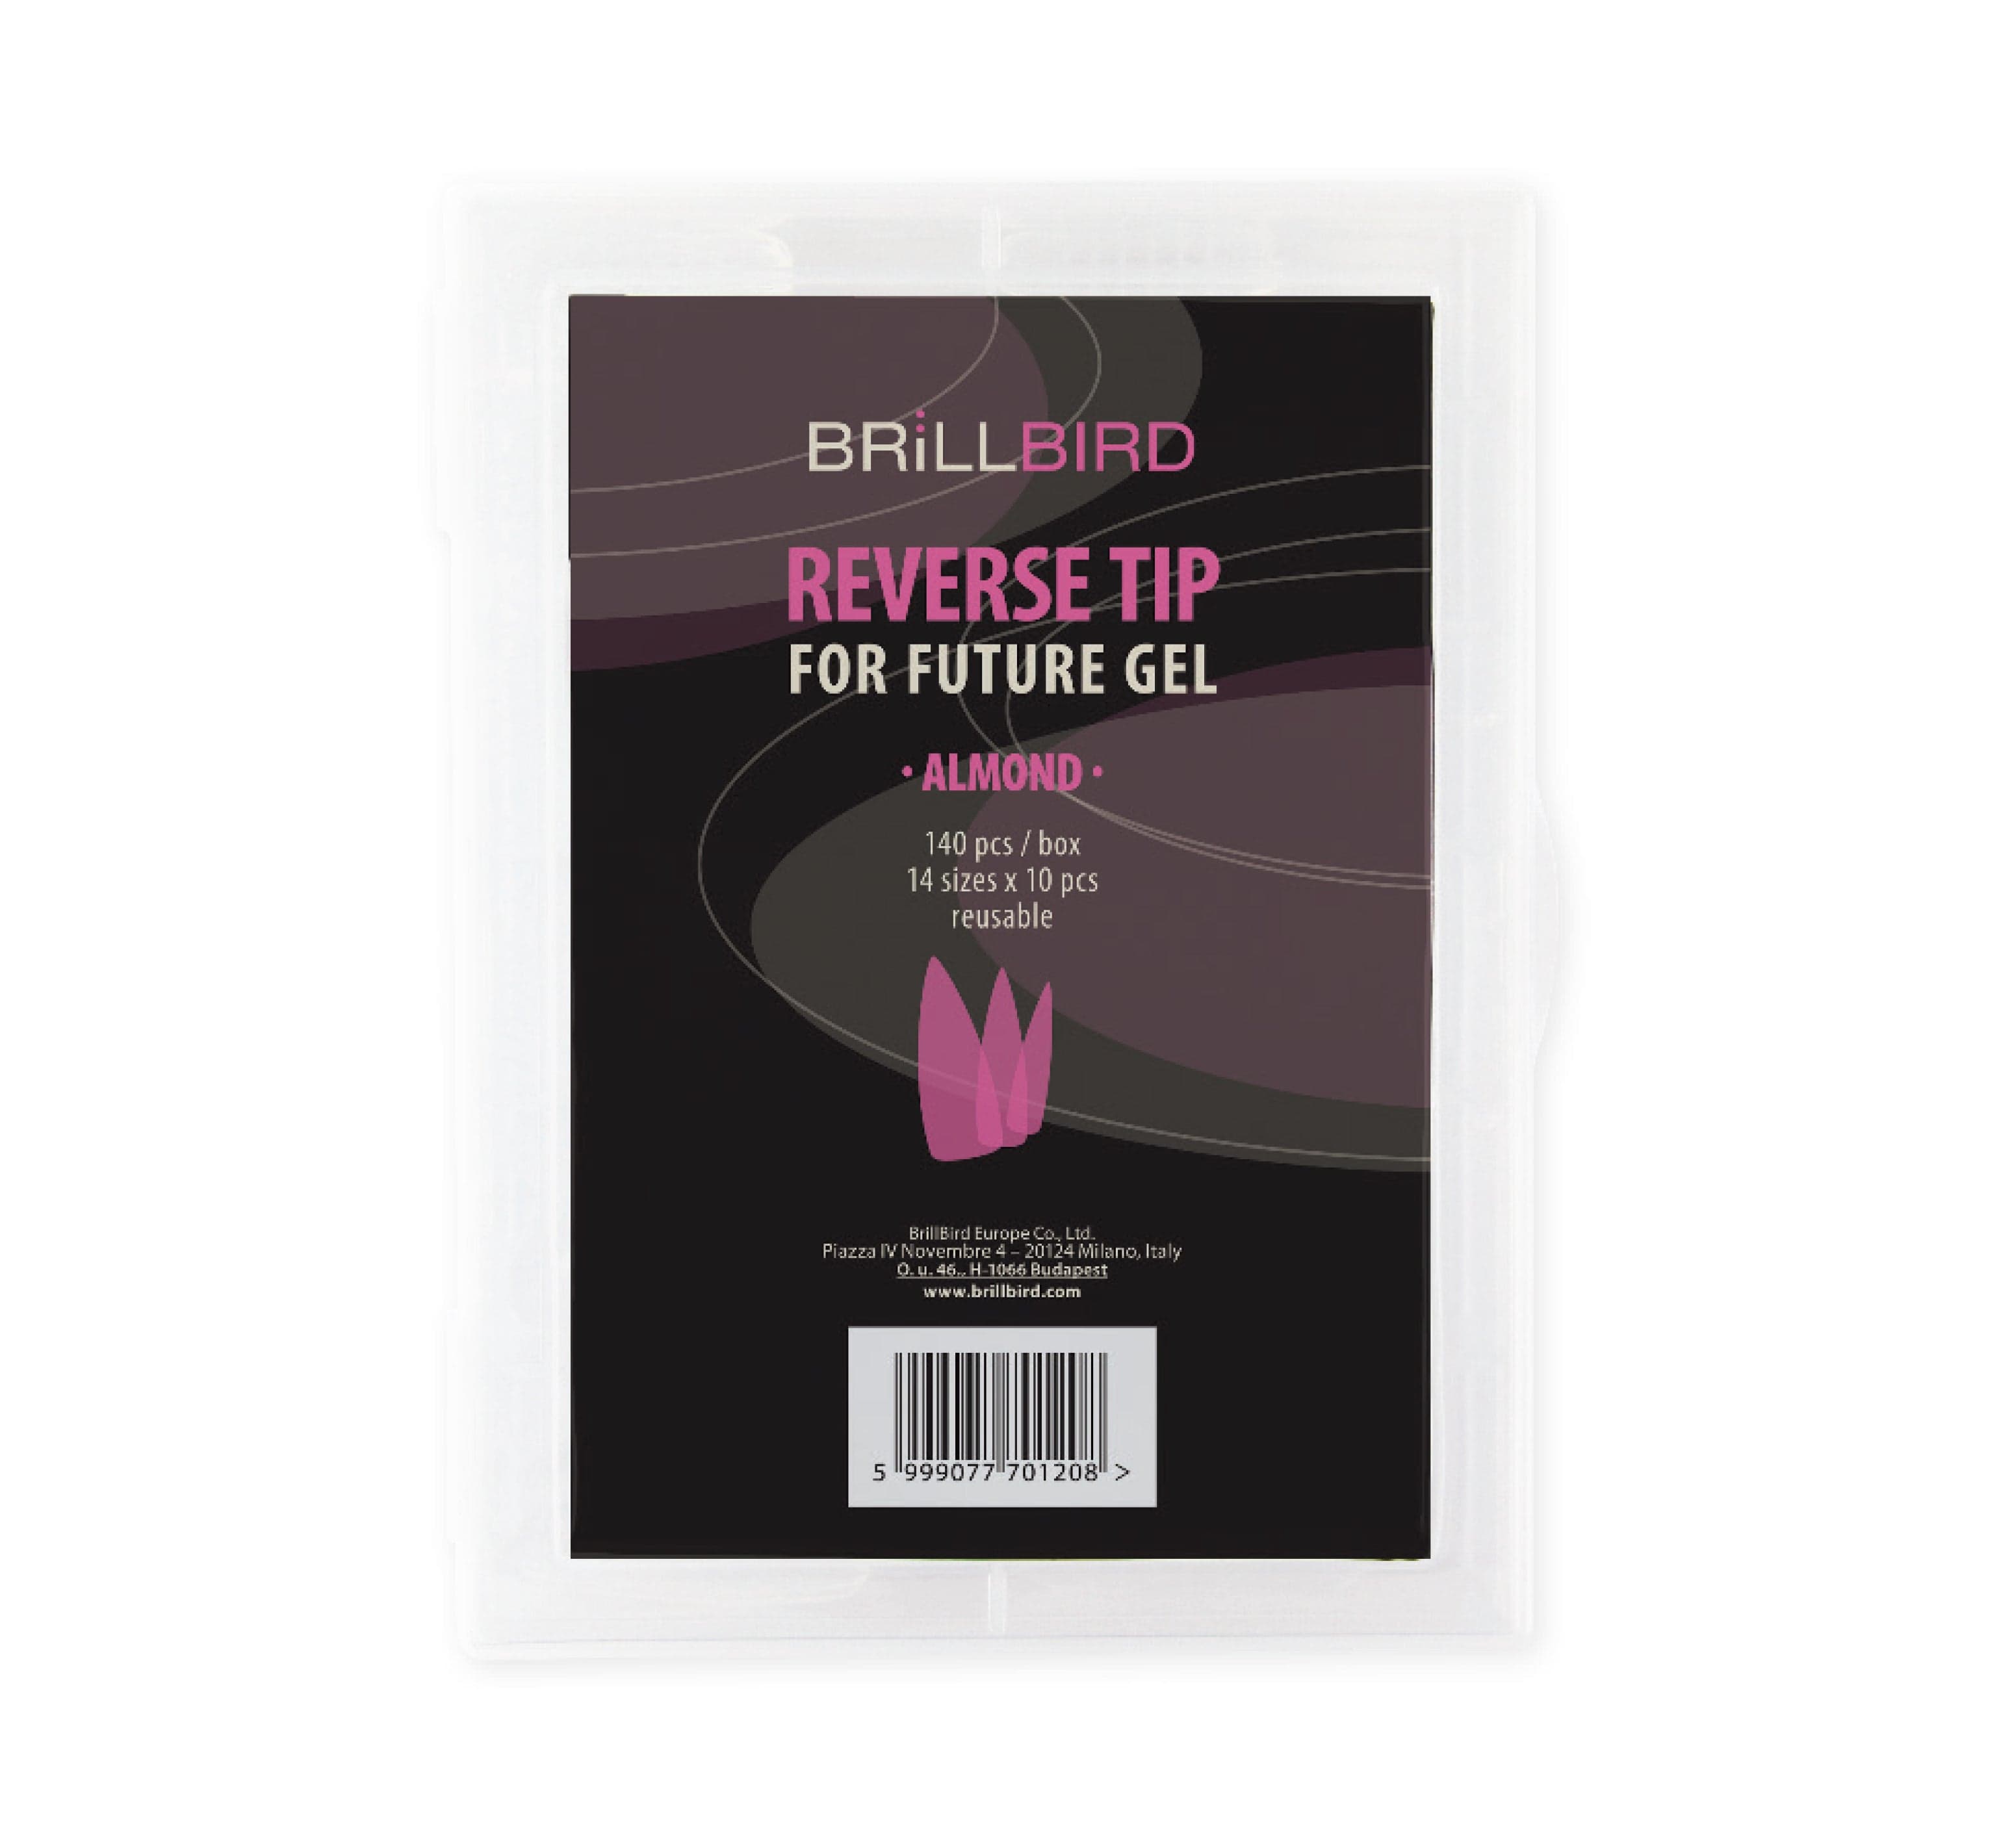 Brillbird Norge FUTURE GEL Reverse Tipper for Future Gel (140stk) – Almond